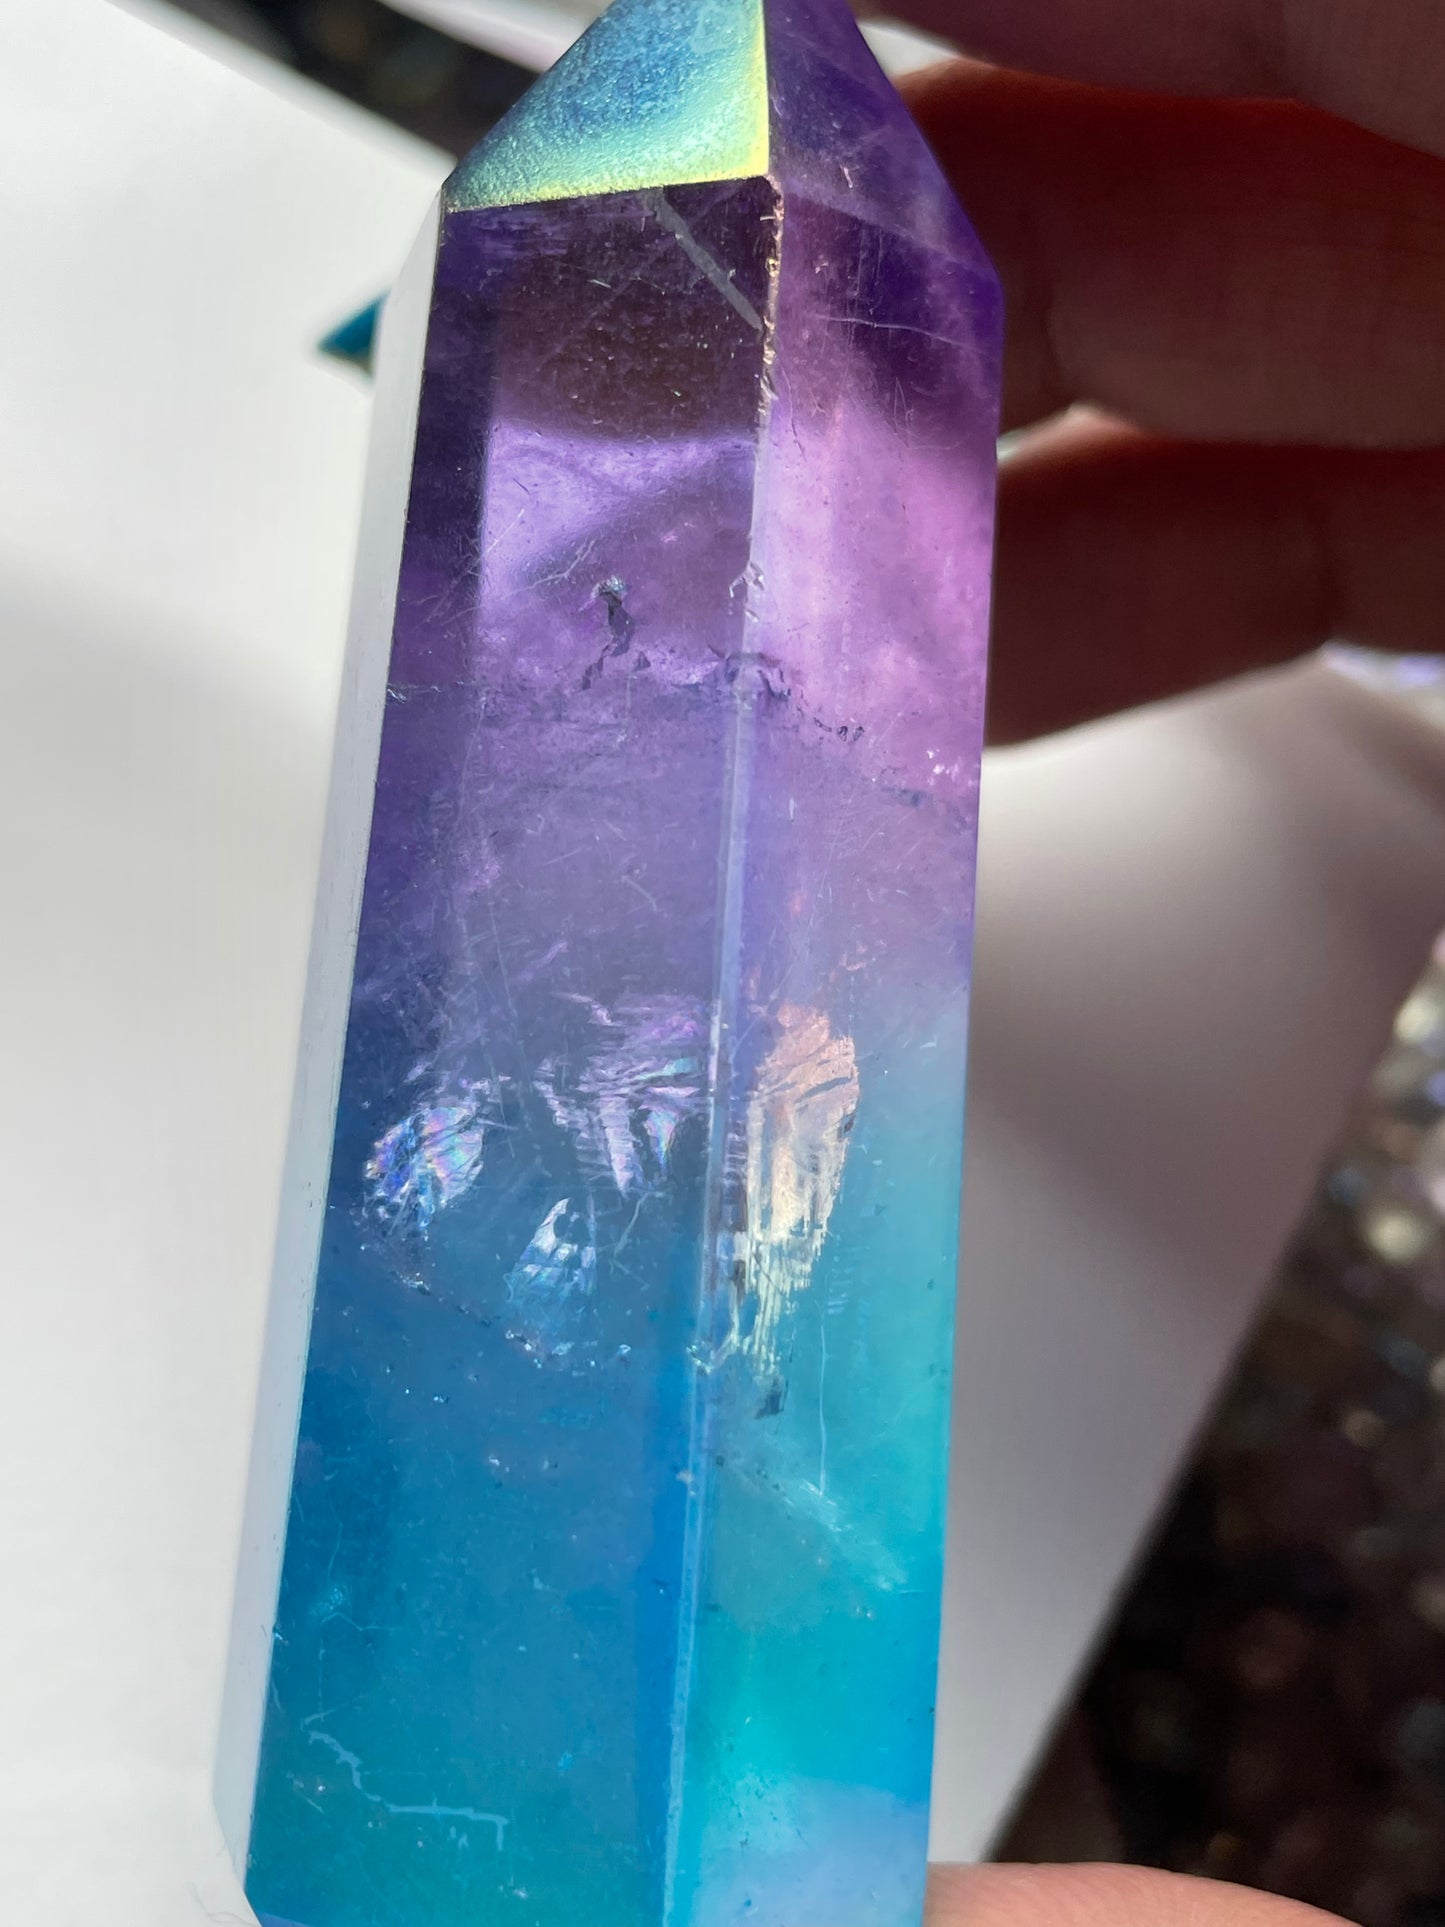 Purple & Aqua Blue Hybrid Aura Quartz Crystal Gemstone Tower Point (1)